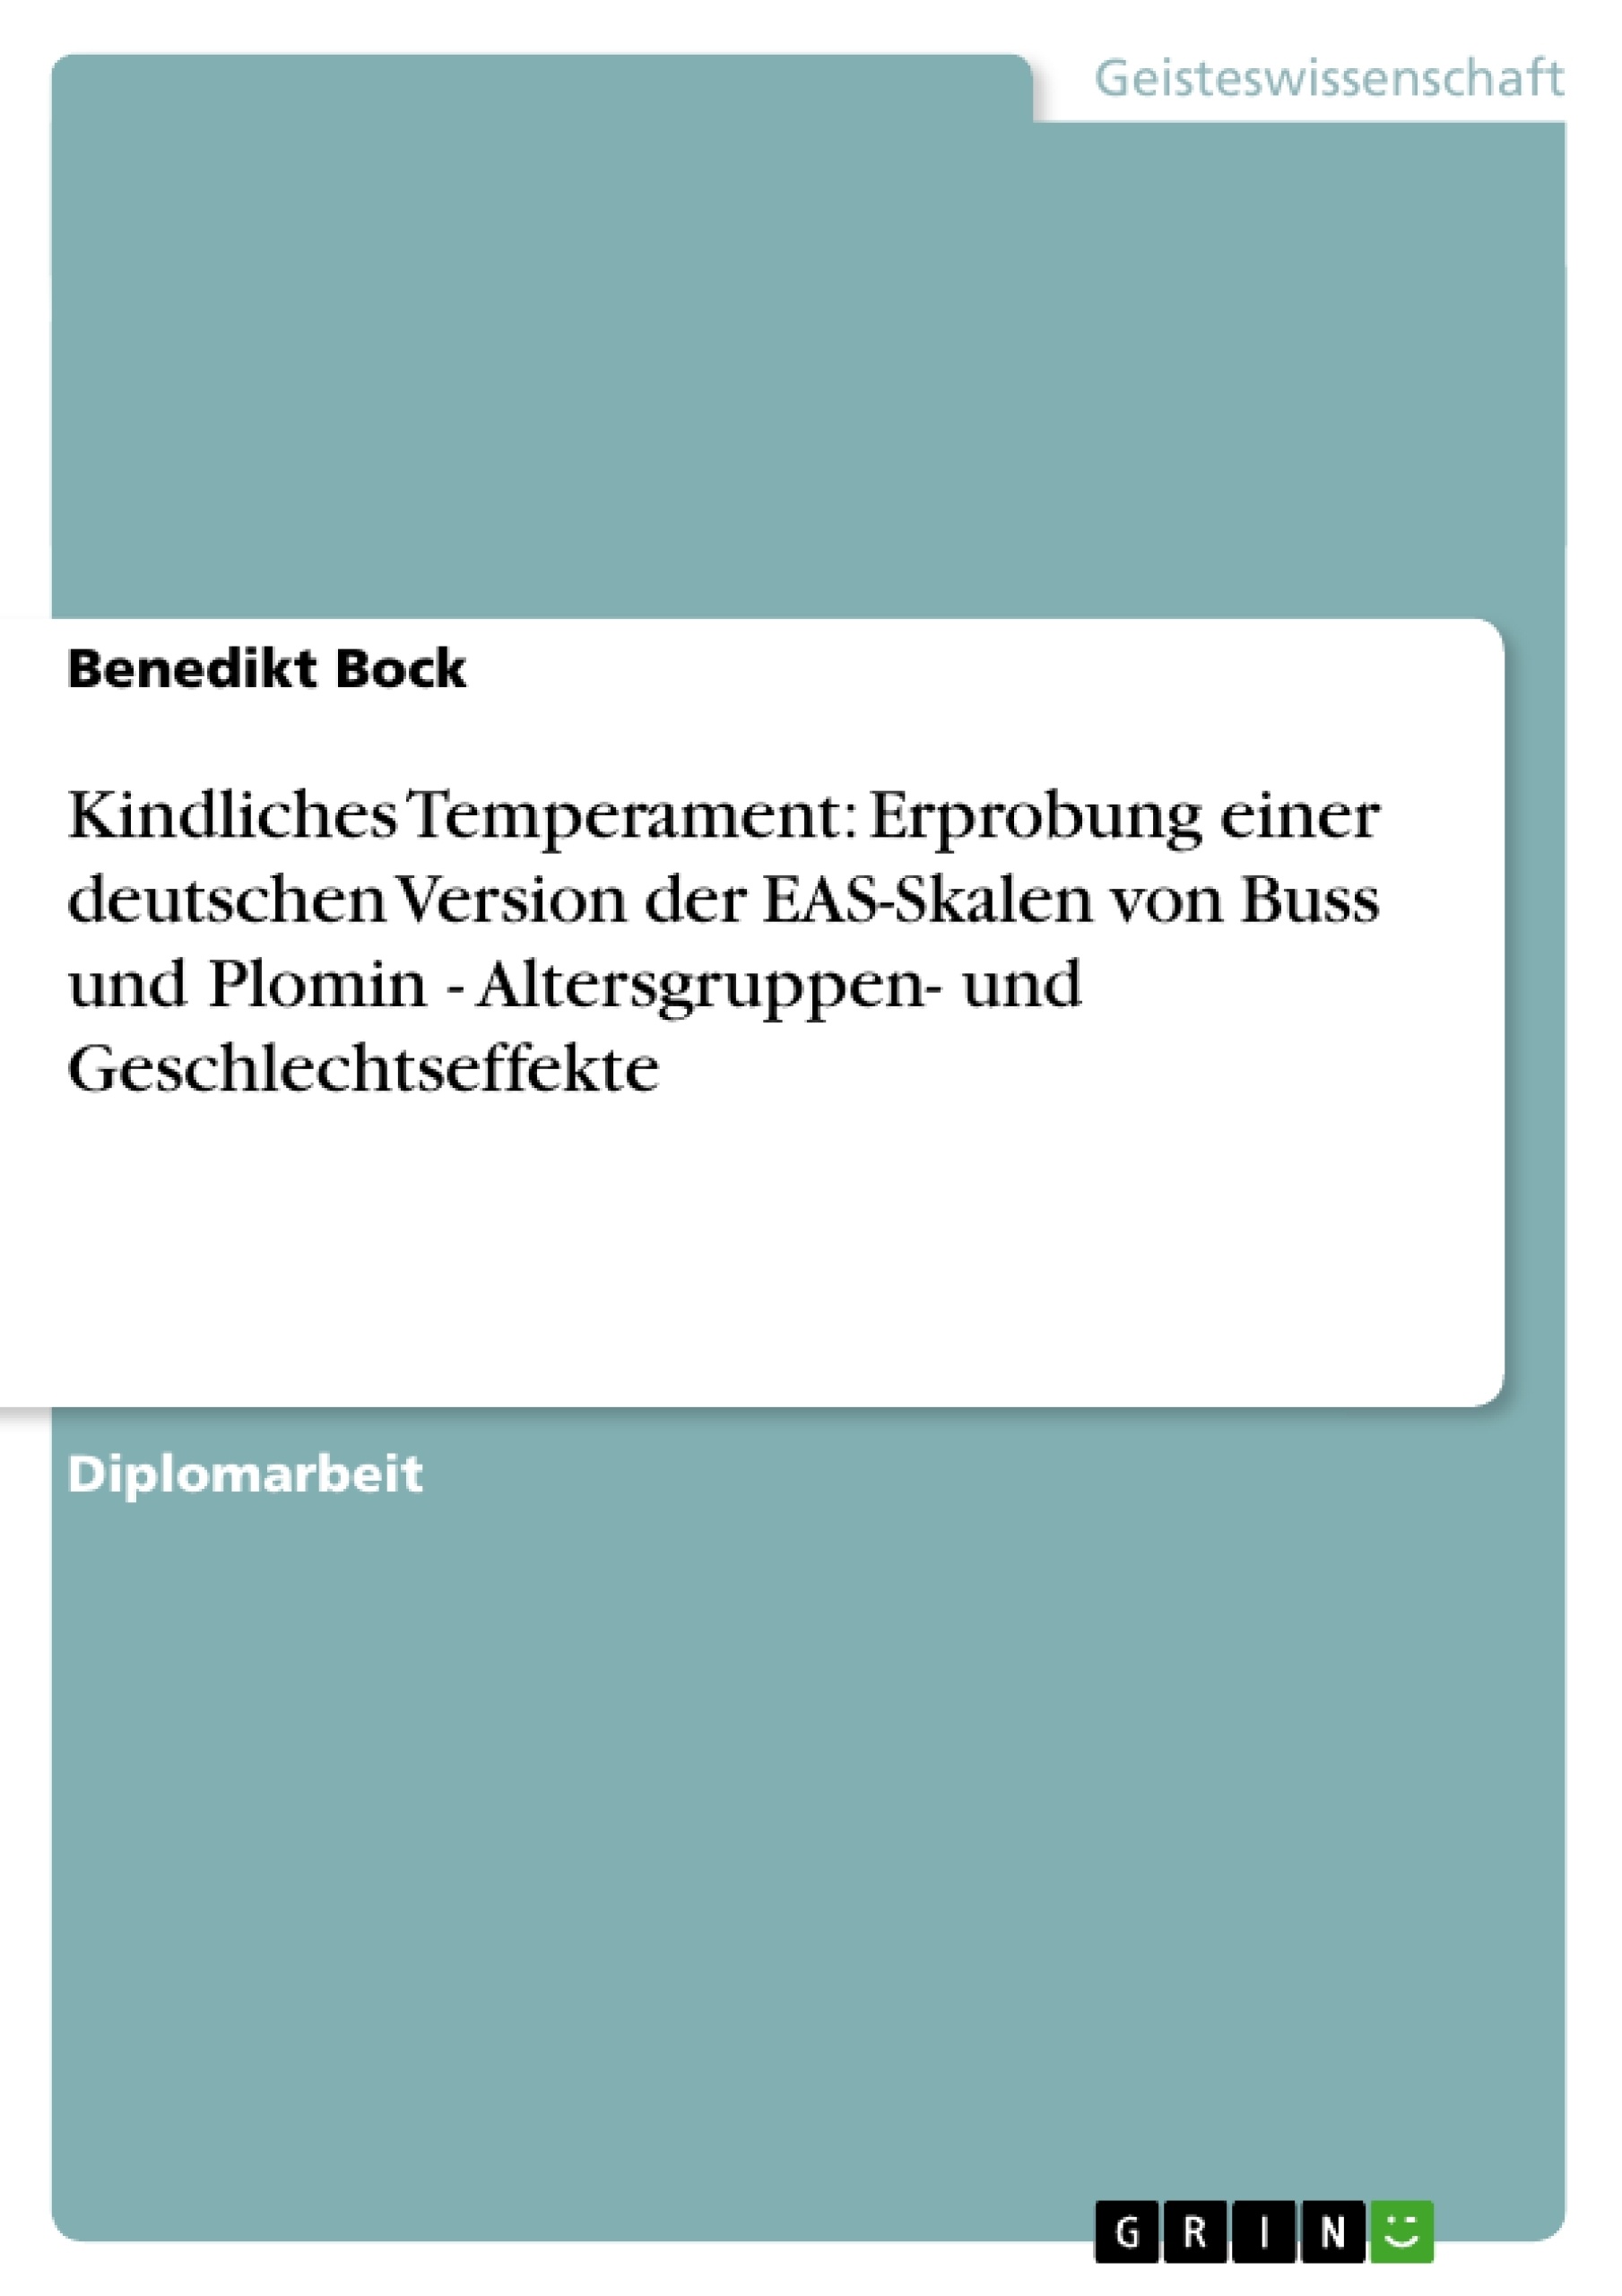 Titel: Kindliches Temperament: Erprobung einer deutschen Version der EAS-Skalen von Buss und Plomin - Altersgruppen- und Geschlechtseffekte